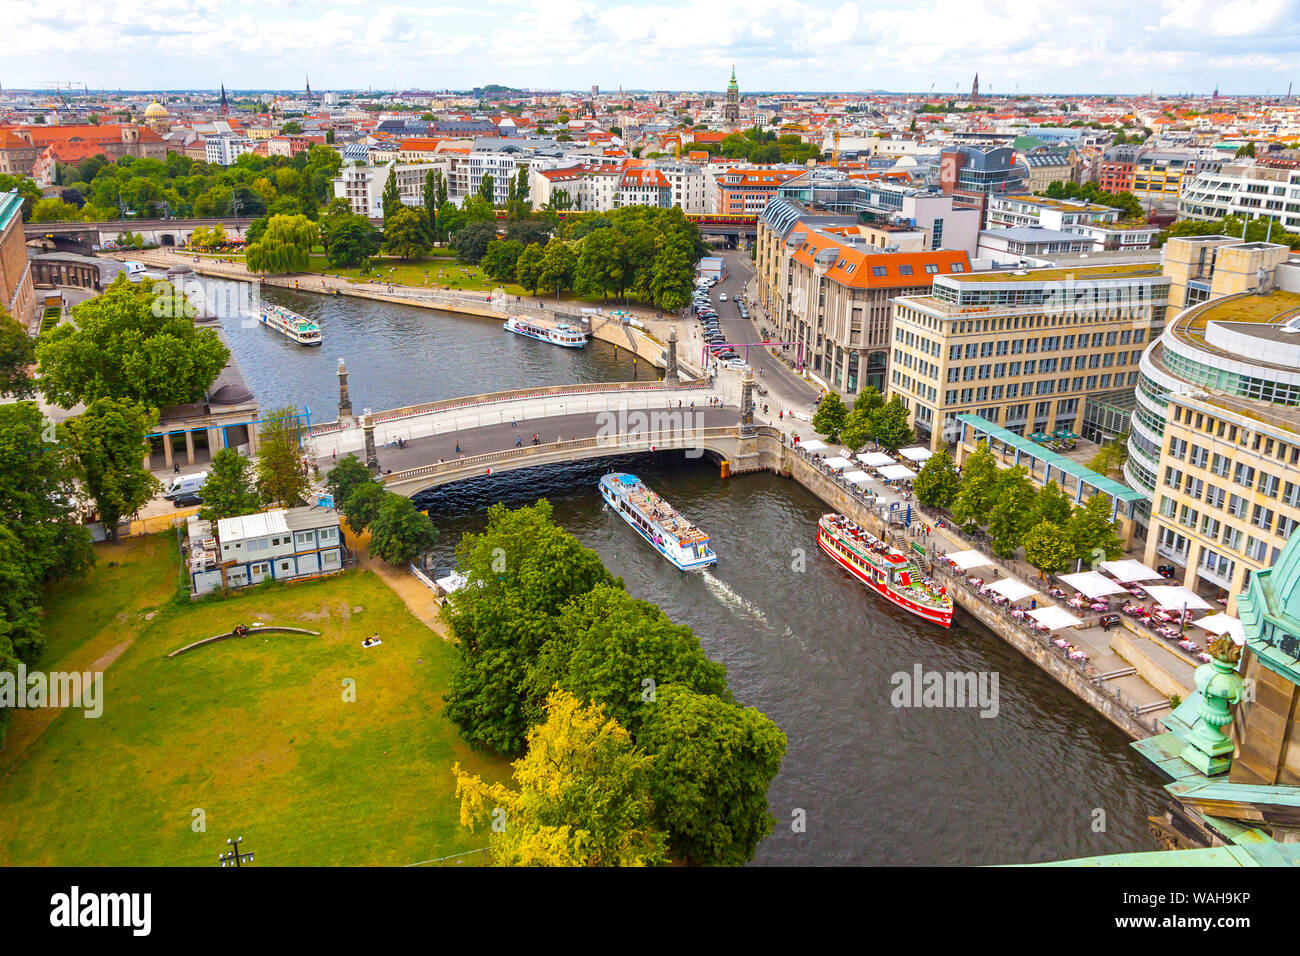 Skyline Luftbild von Spree und der Museumsinsel in Berlin, Deutschland. Berlin touristische tour Boote auf dem Fluss. Blick vom Berliner Dom Stockfoto